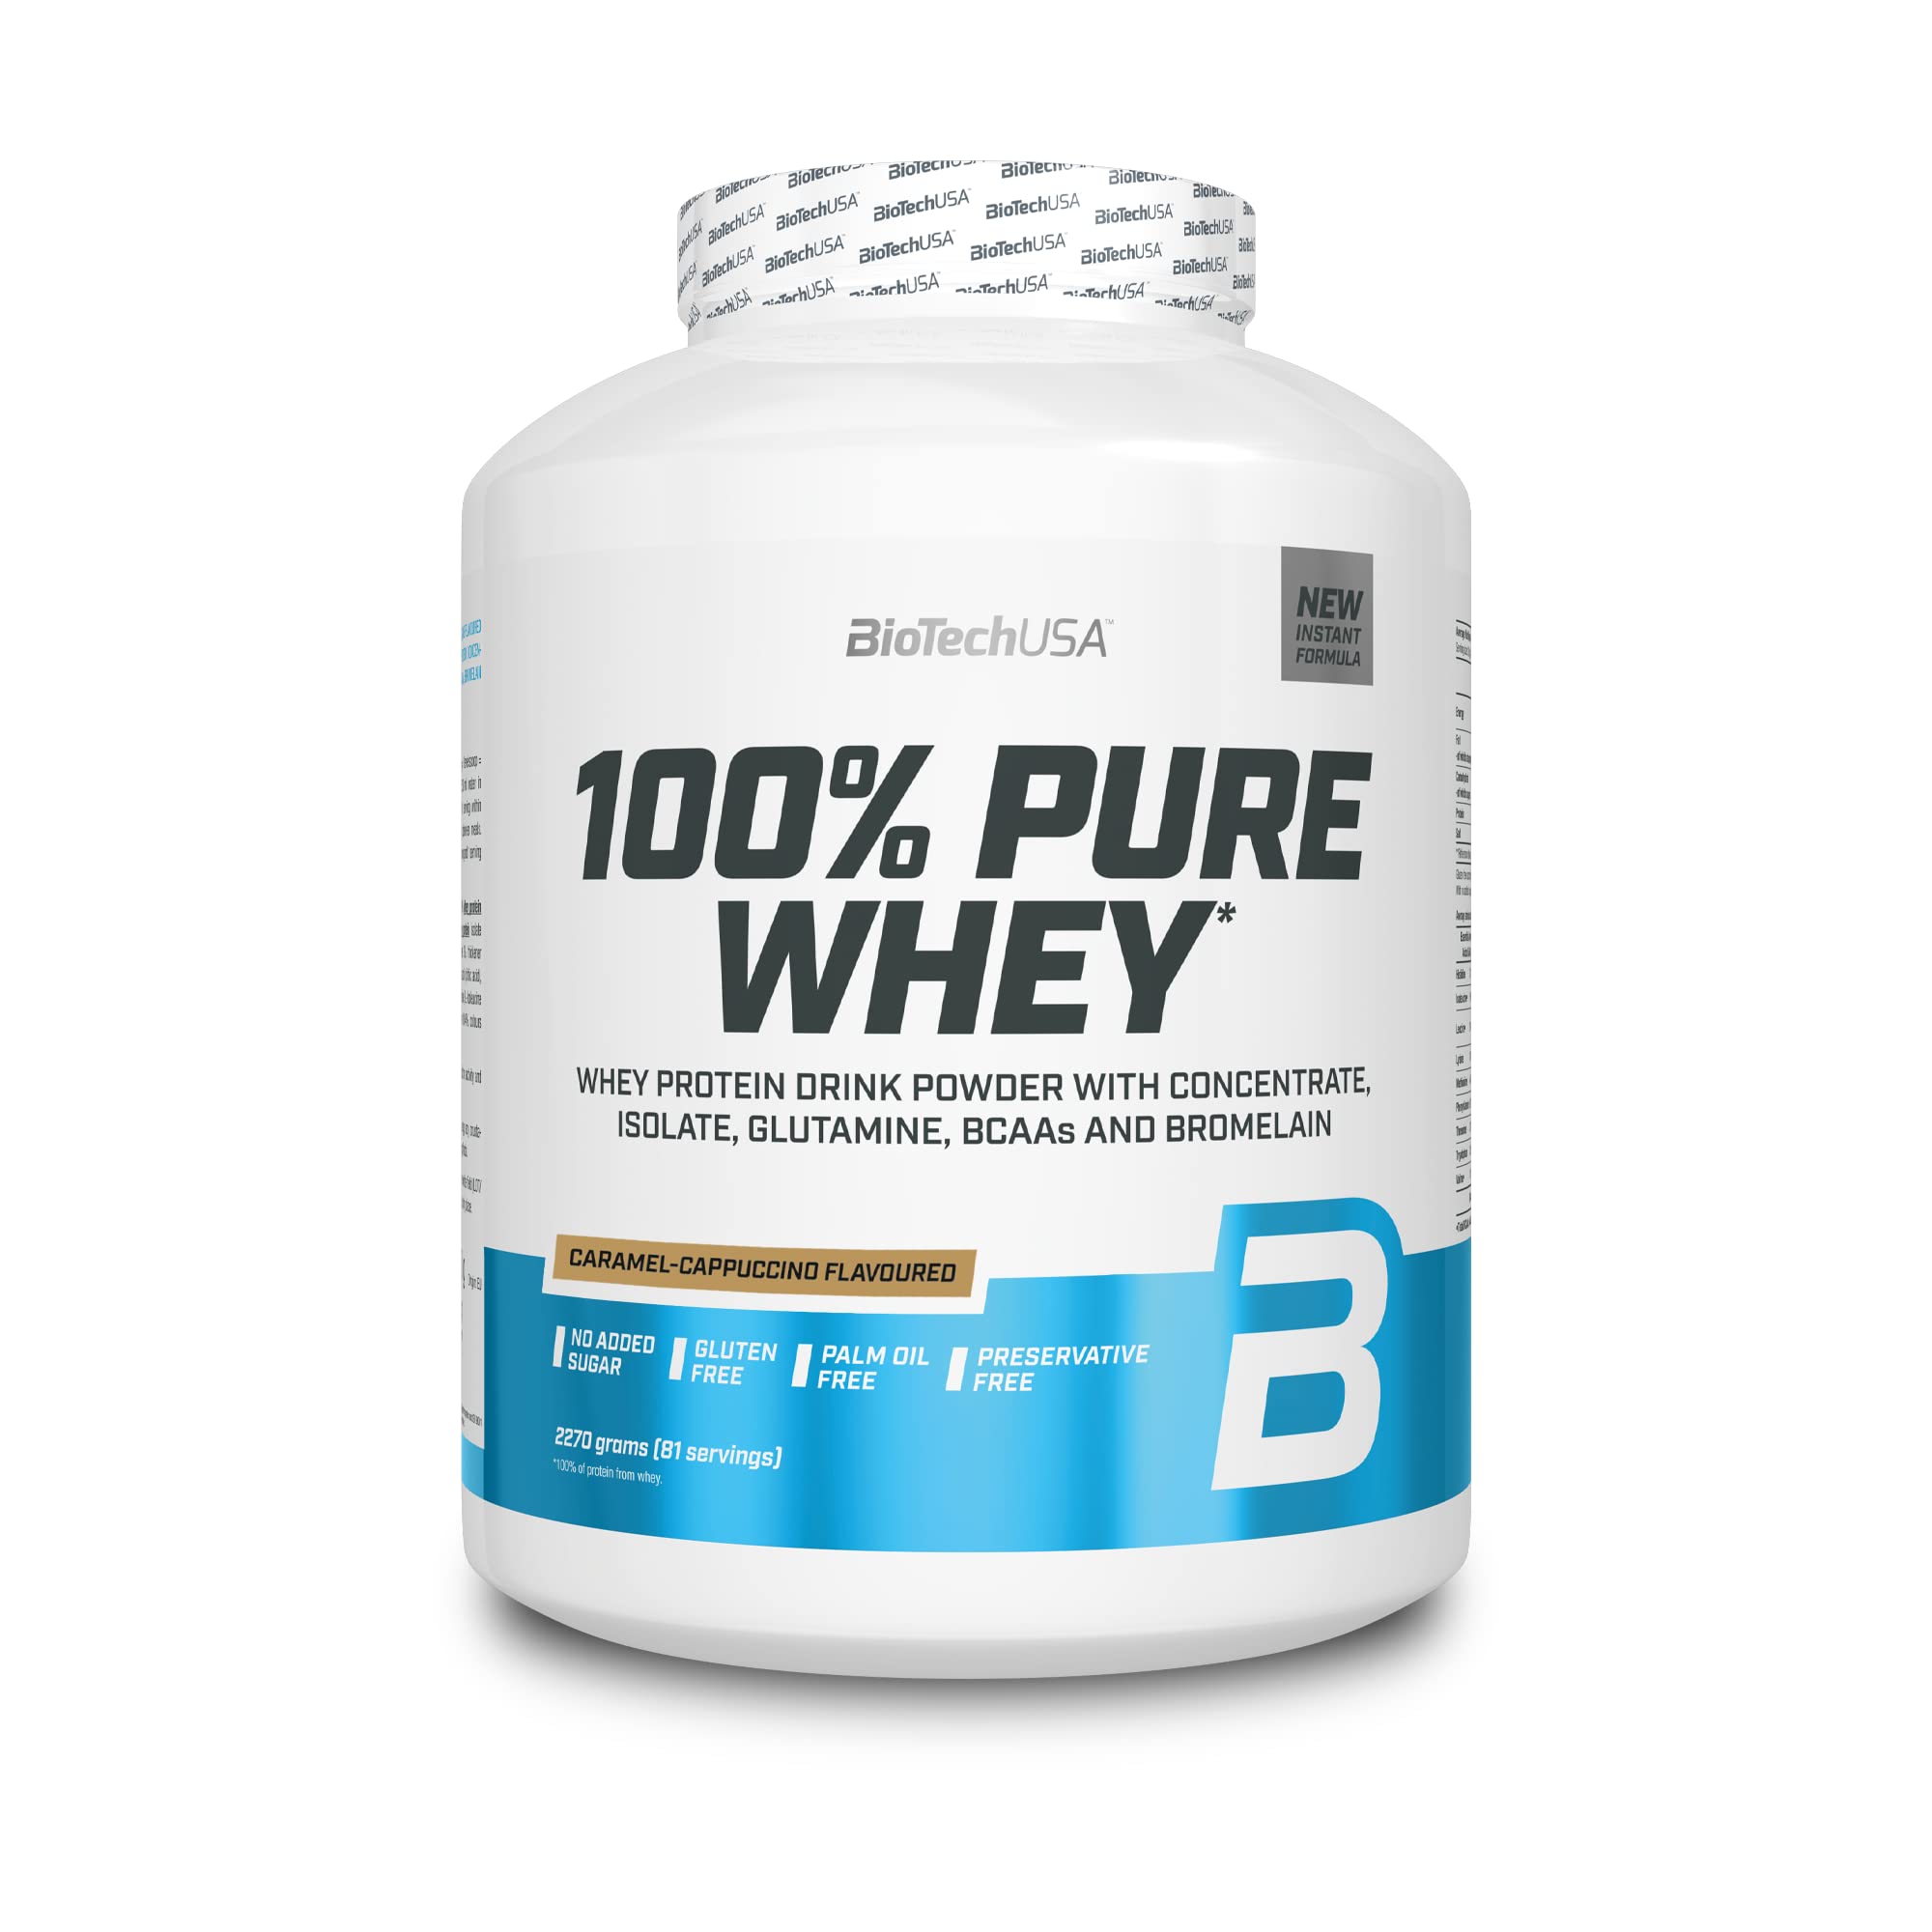 BioTechUSA 100% Pure Whey | Proteinpulver mit BCAA und Glutamin | Glutenfrei, Palmölfrei | 28g Protein pro Portion, 2.27 kg, Karamell-Cappuccino